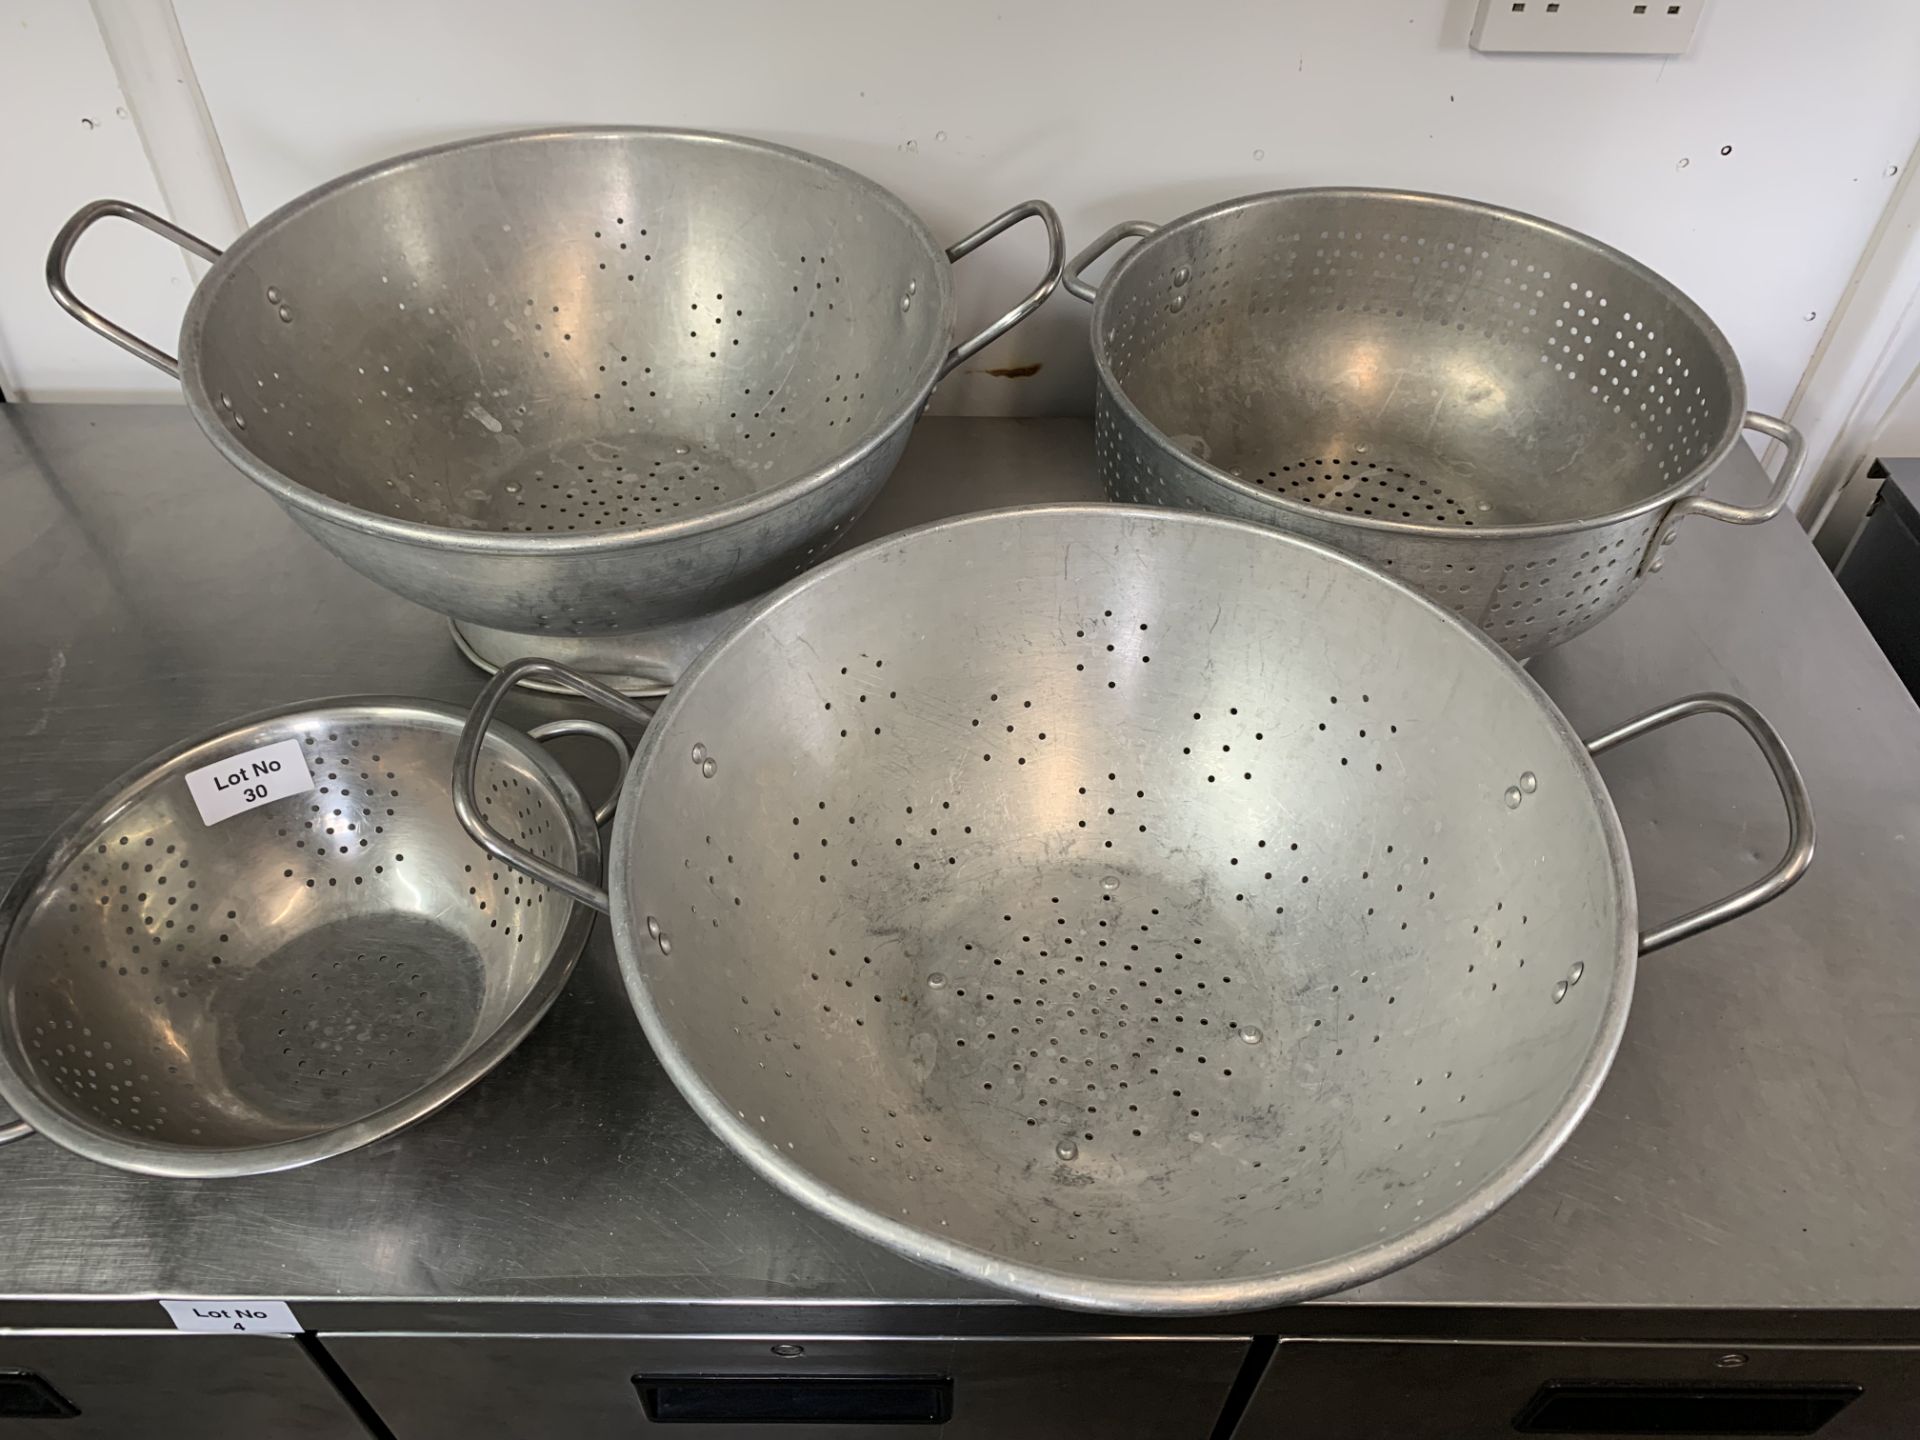 4 good sieves